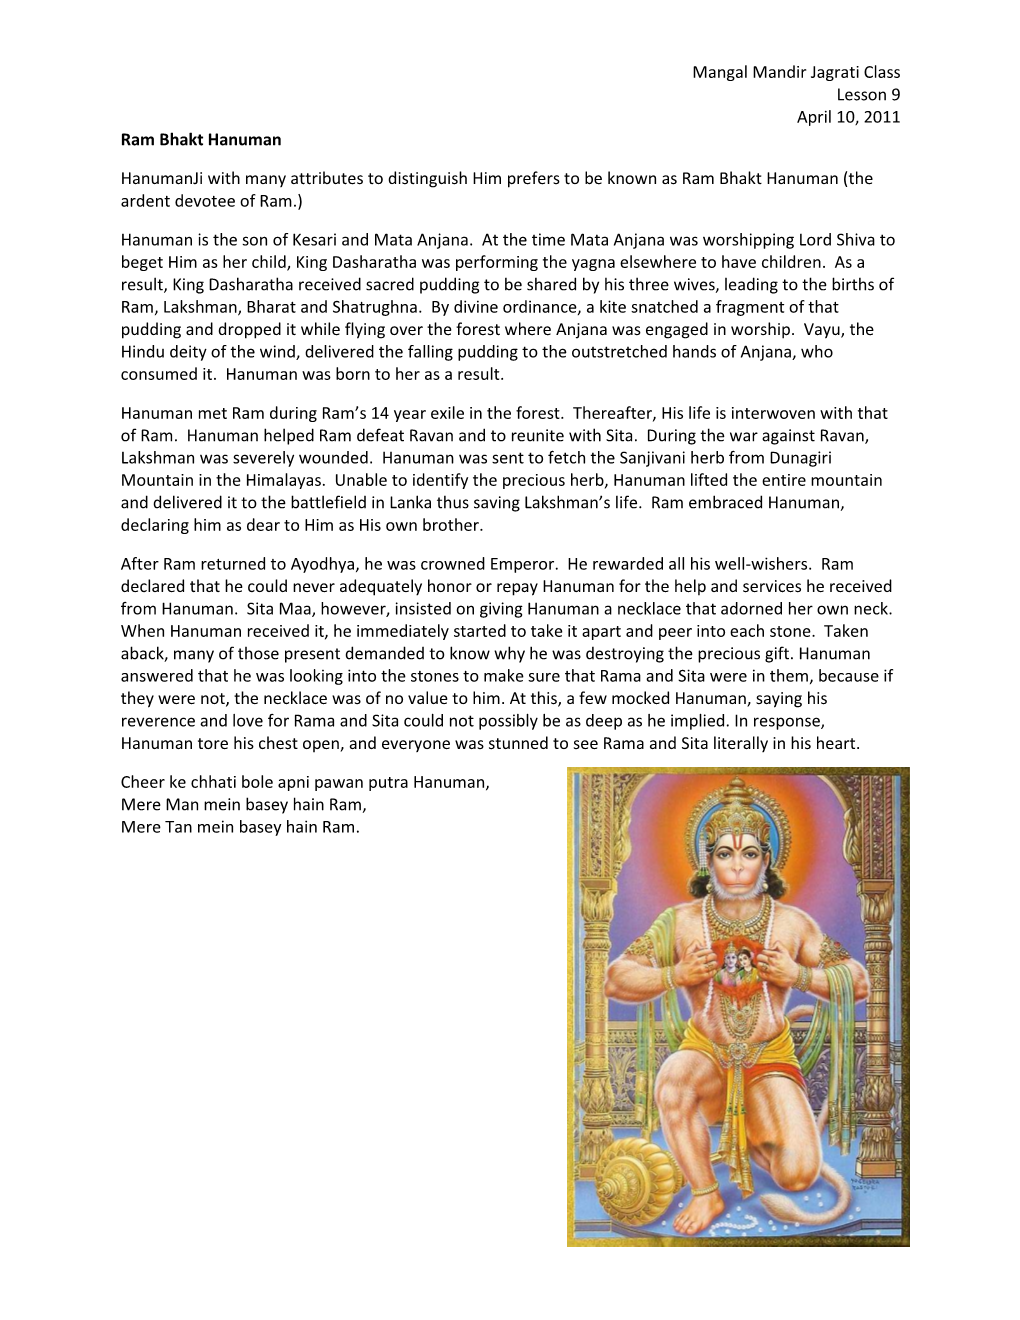 Mangal Mandir Jagrati Class Lesson 9 April 10, 2011 Ram Bhakt Hanuman